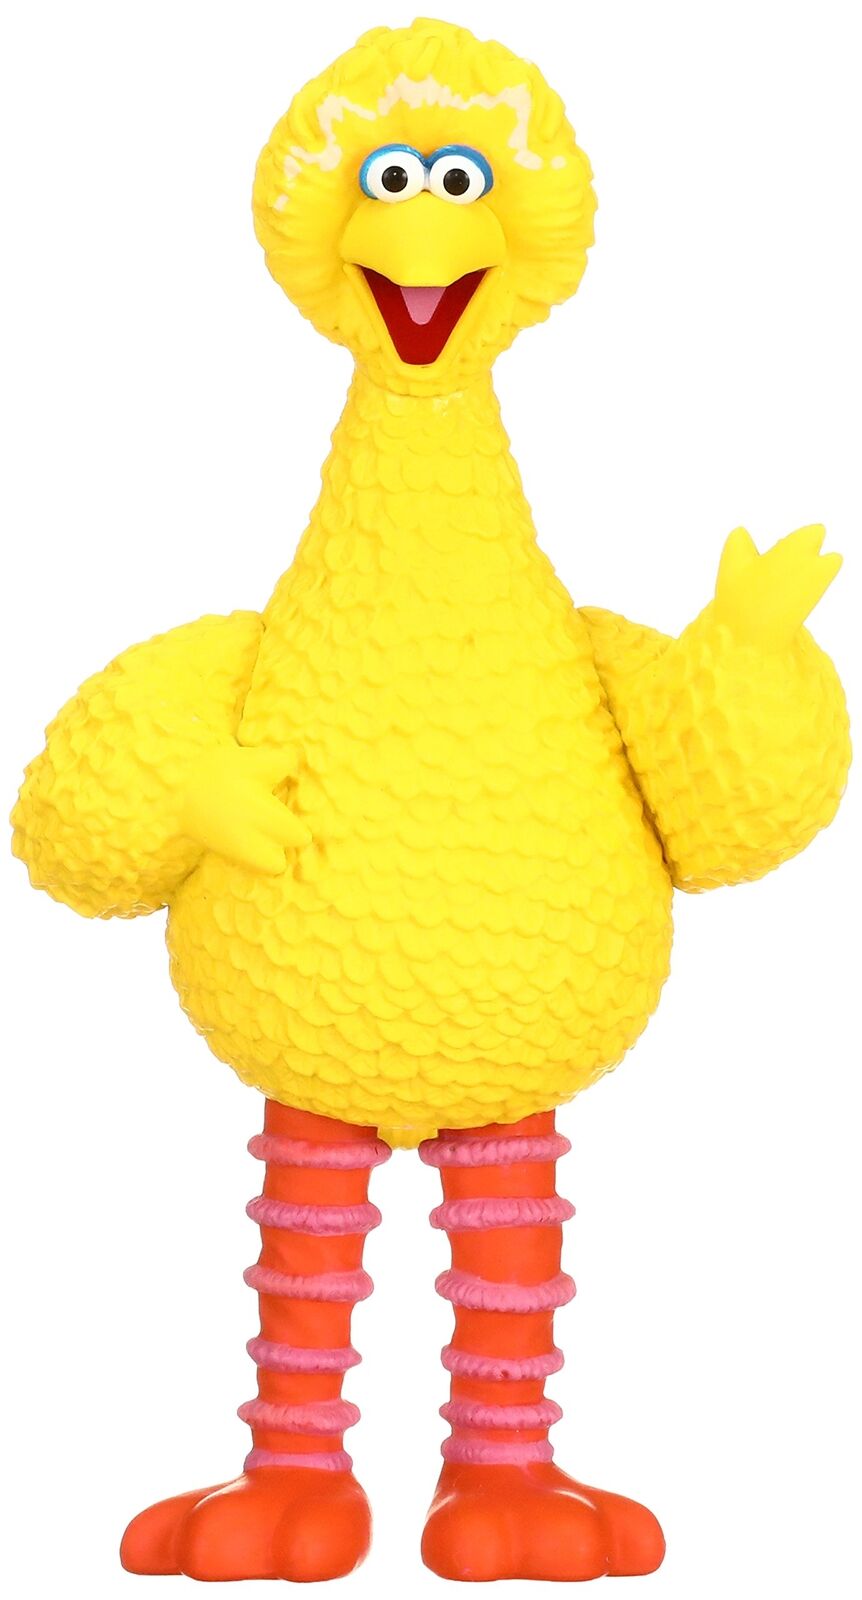 Medicom Toy Udf Kubrick Sesame Street Series 1 Big Bird Figure Sep168390 No.59